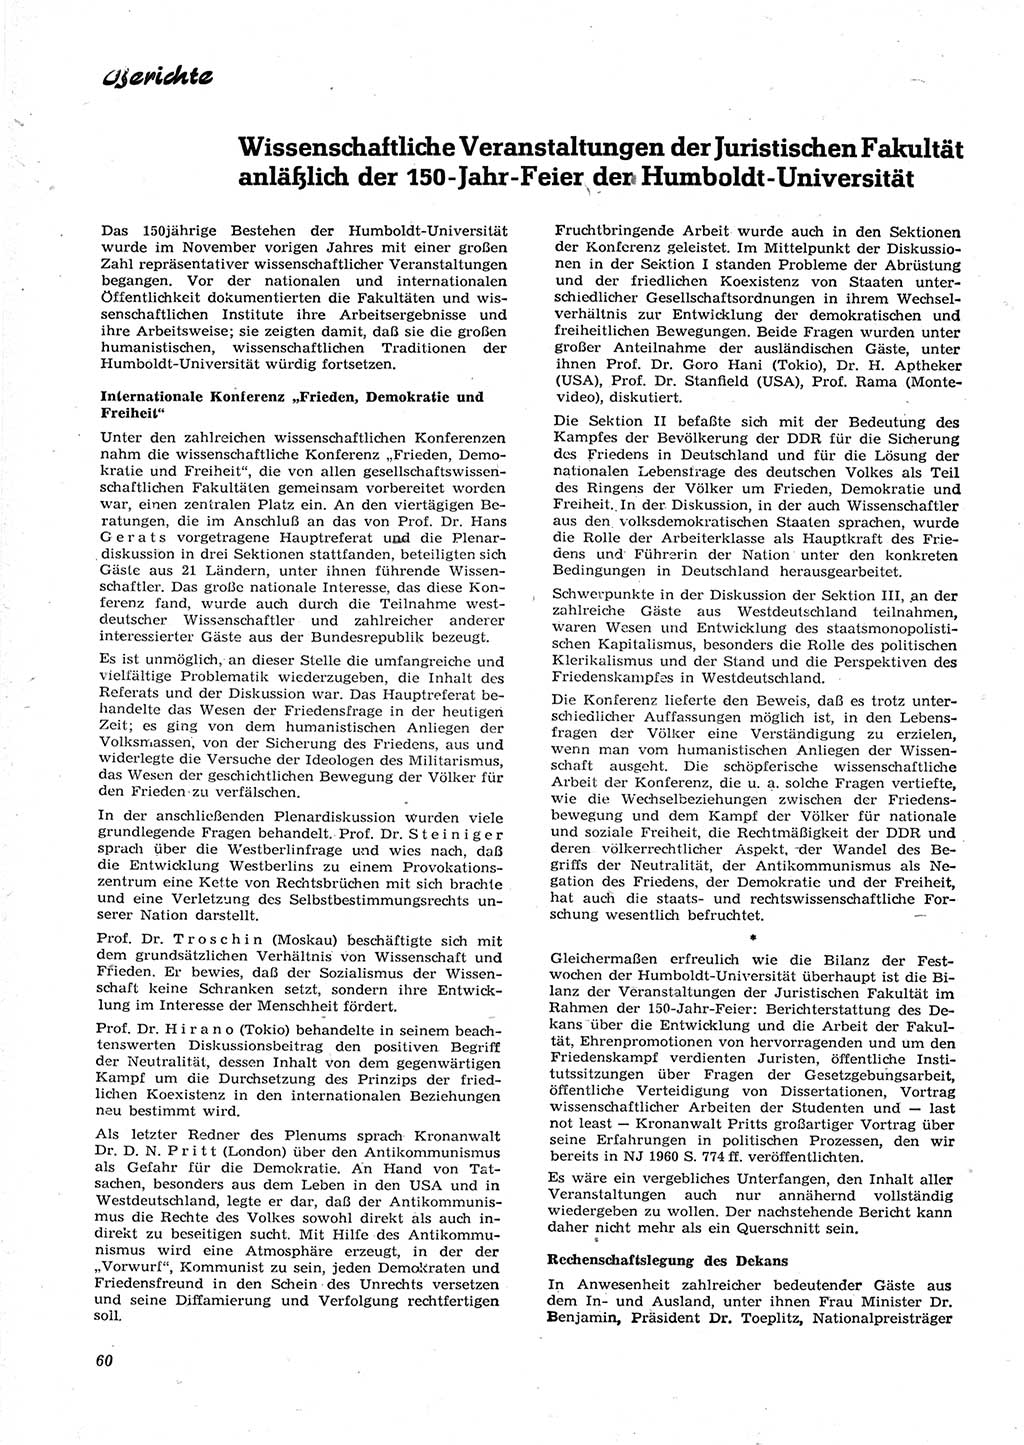 Neue Justiz (NJ), Zeitschrift für Recht und Rechtswissenschaft [Deutsche Demokratische Republik (DDR)], 15. Jahrgang 1961, Seite 60 (NJ DDR 1961, S. 60)